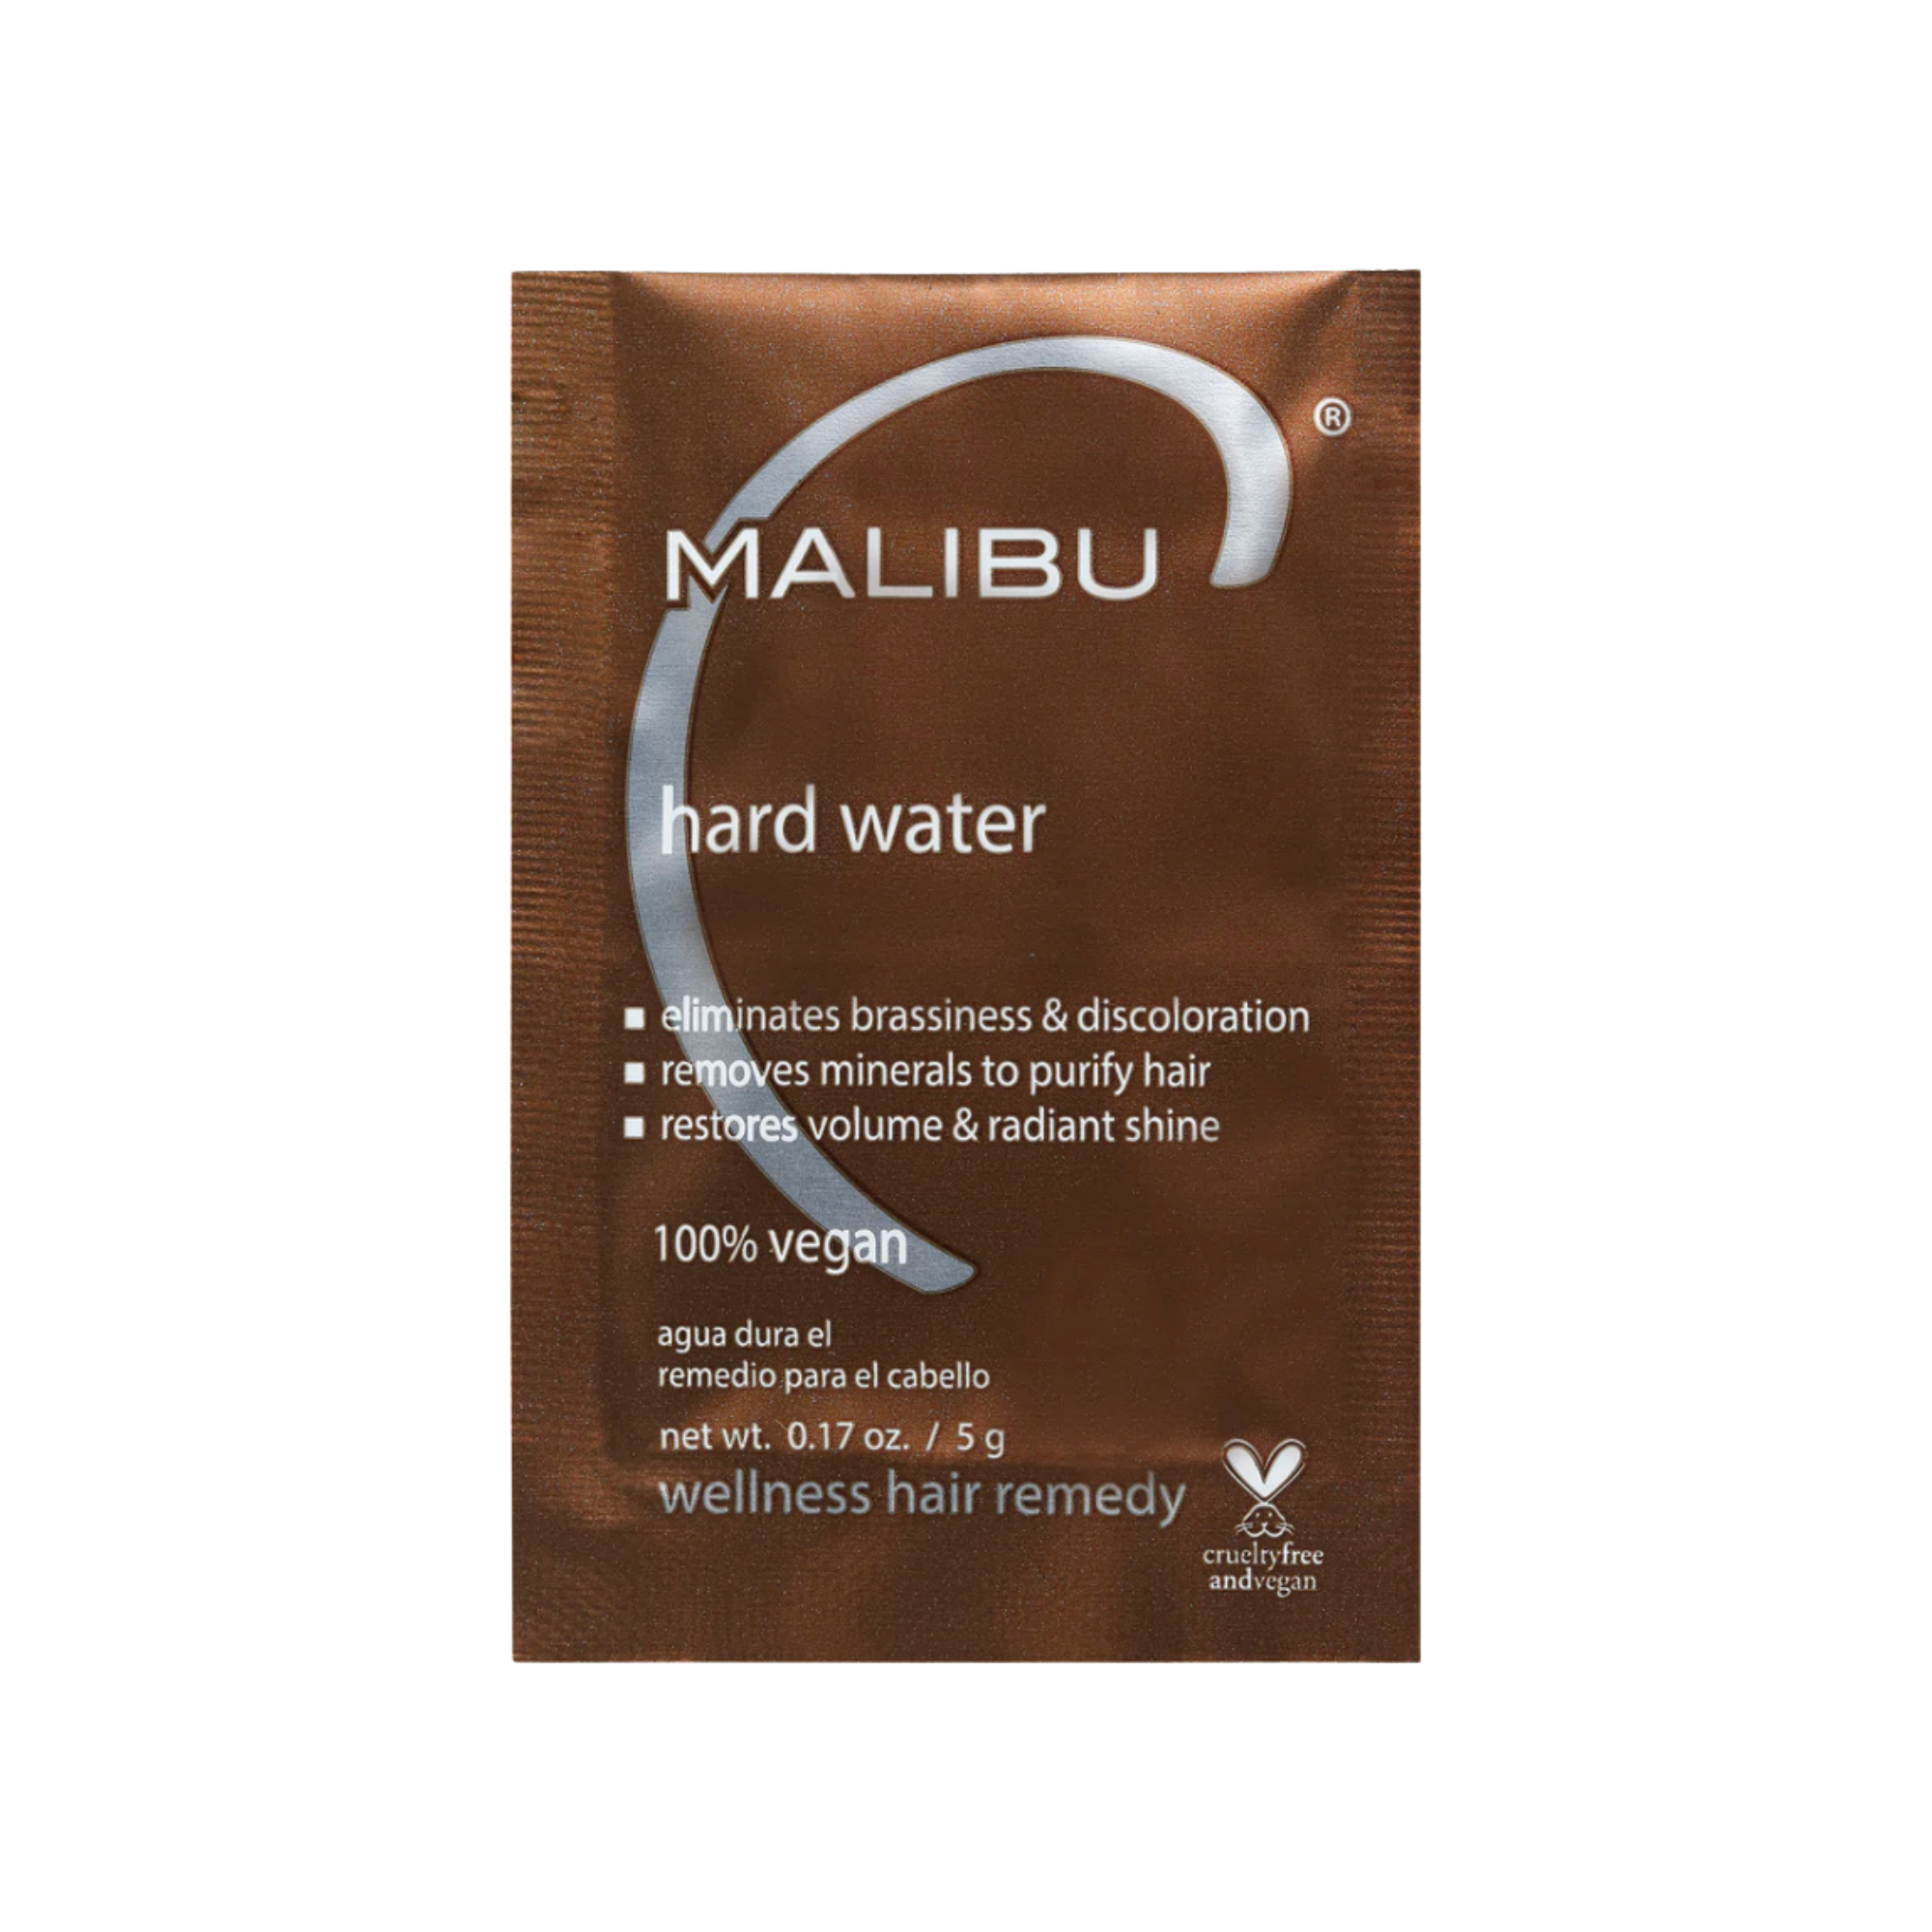 Malibu C Hard Water Wellness Hair Remedy SachetHard Water Wellness Hair Remedy Sachet